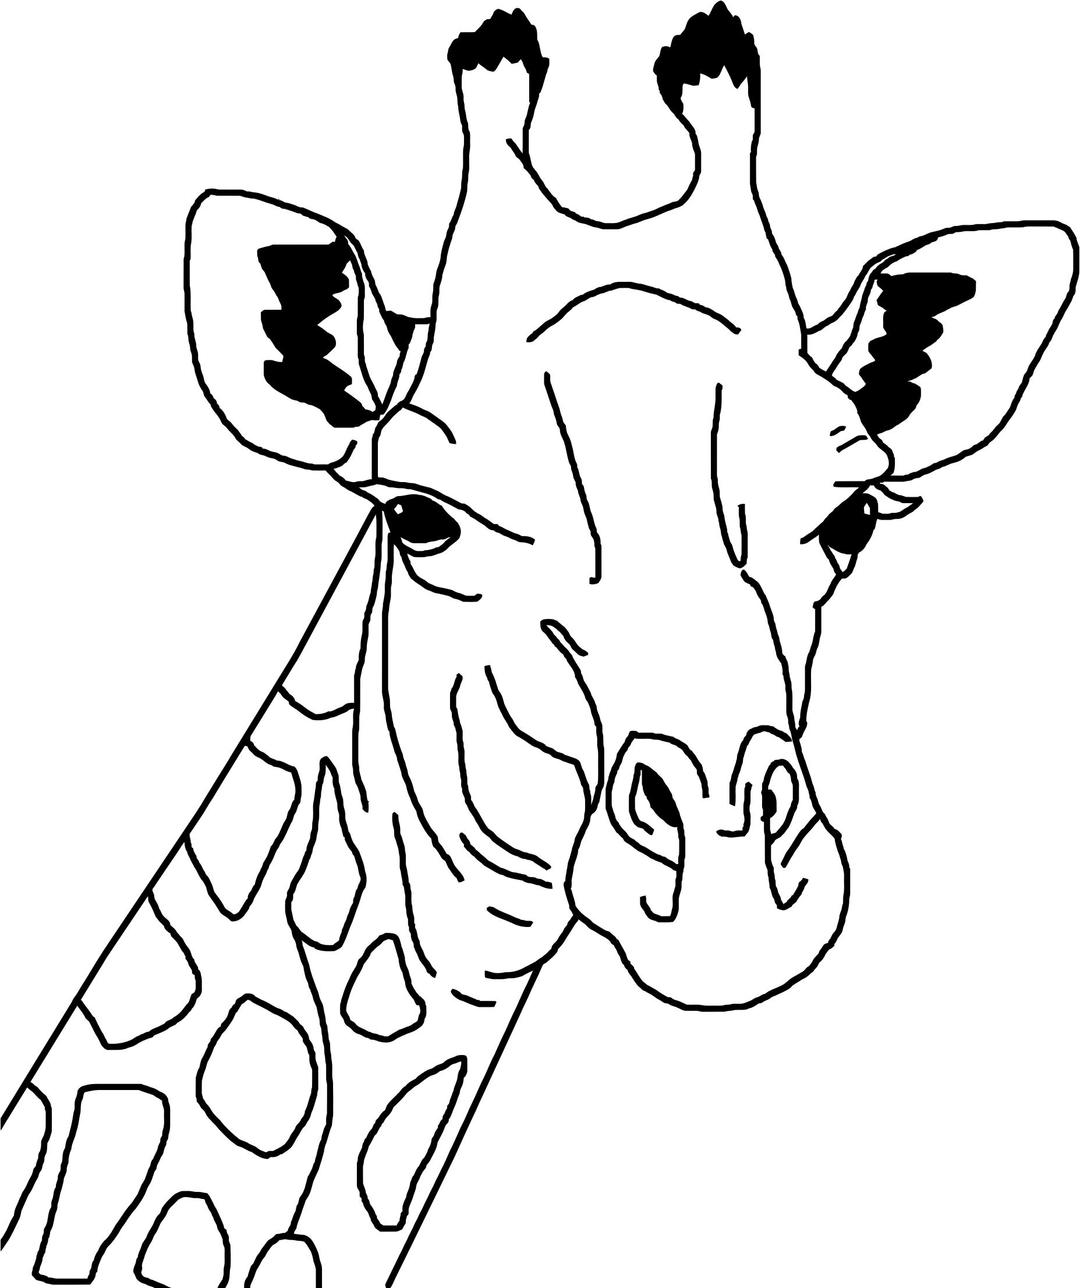 Giraffe line art png transparent